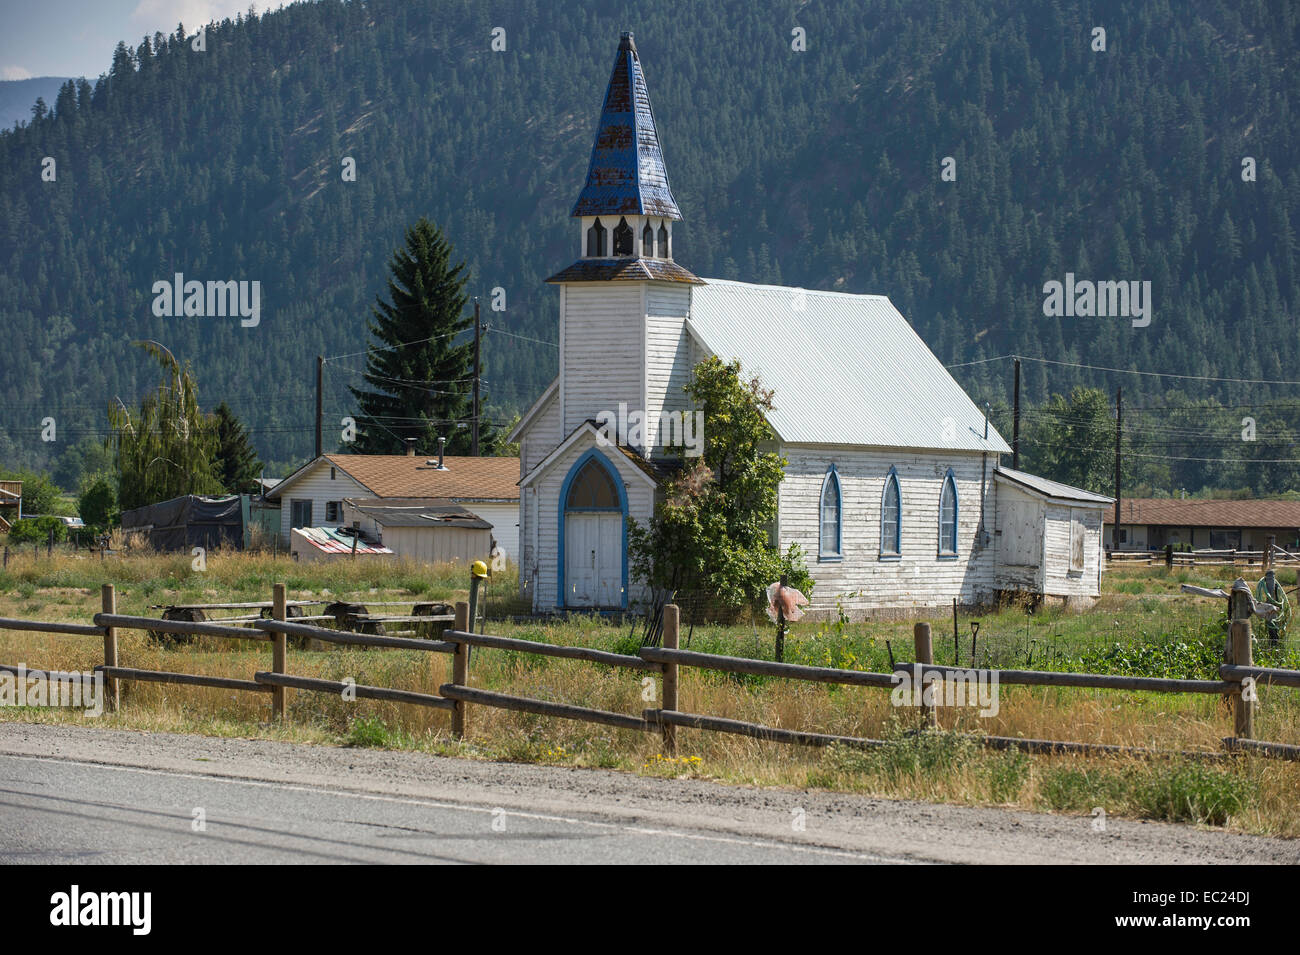 Vecchia camera una chiesa in legno con il campanile si trova nella valle di Nicola, British Columbia. Foto Stock